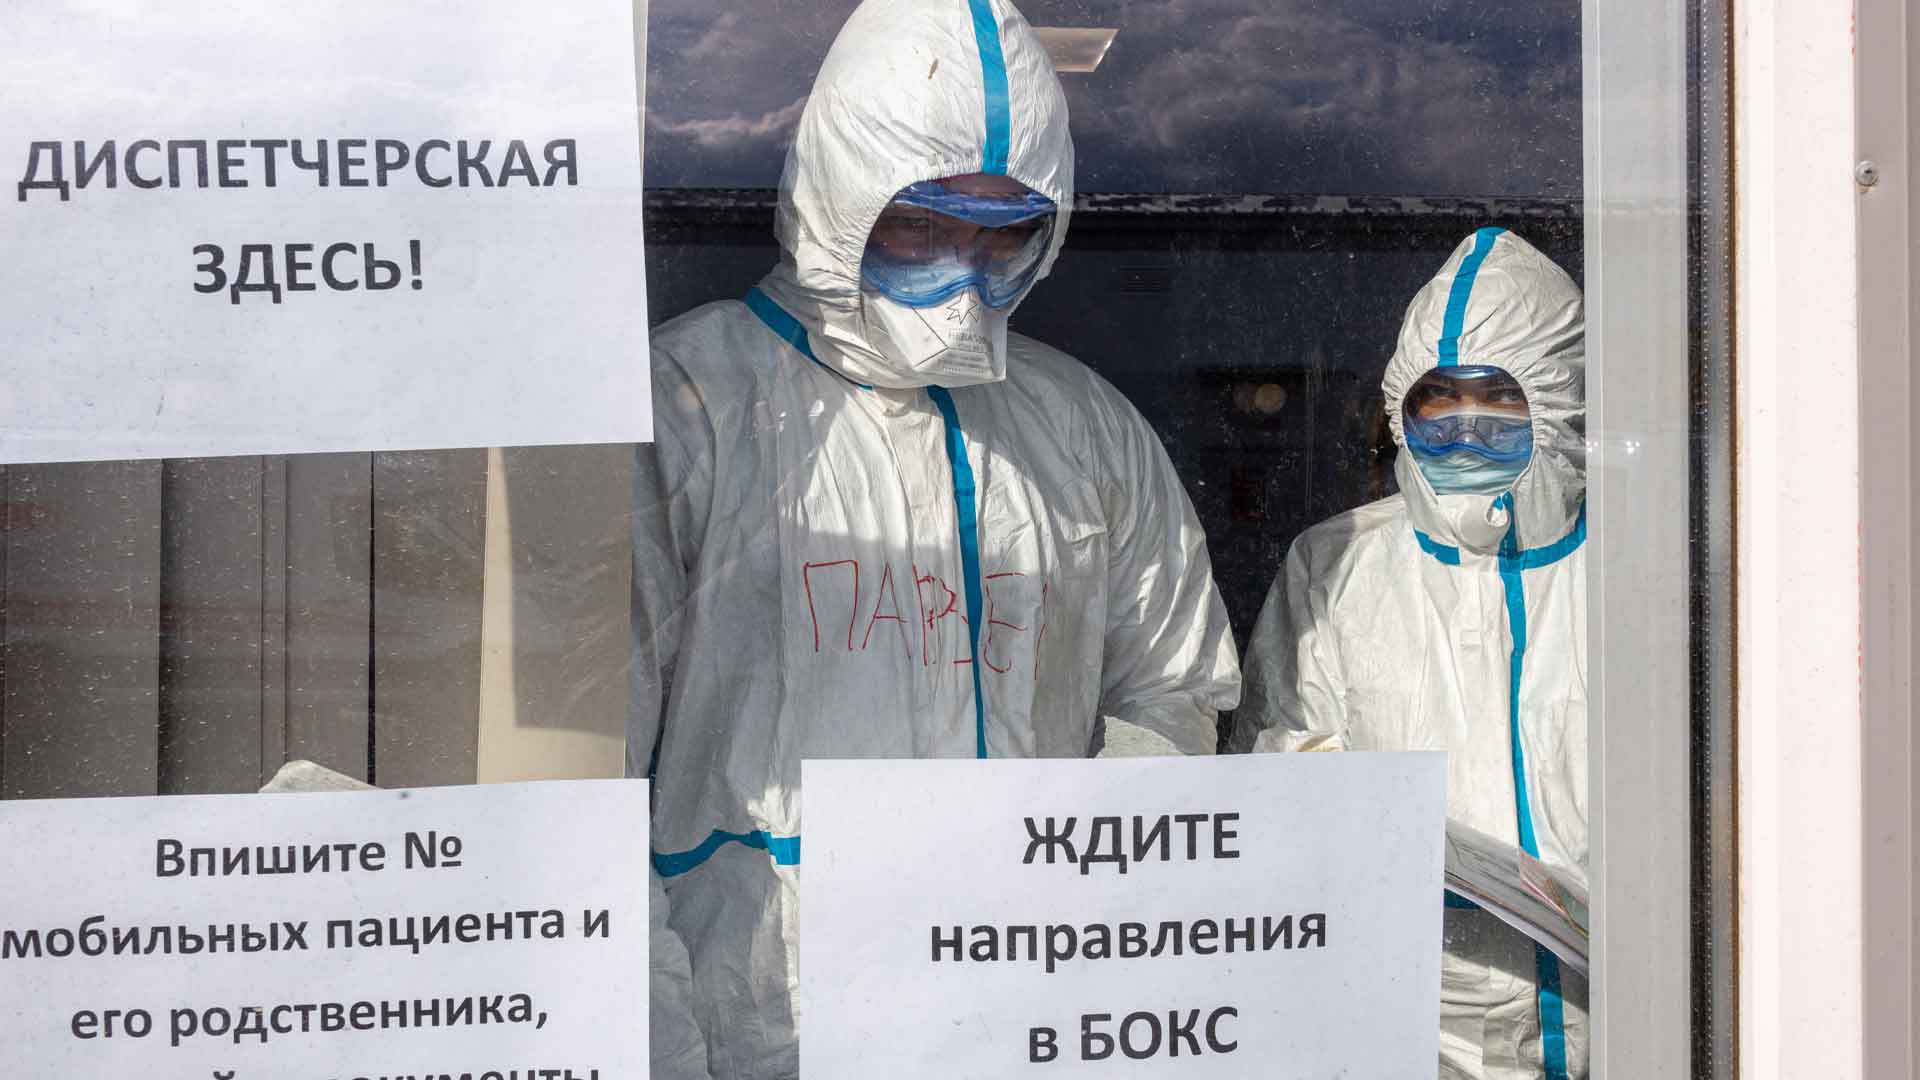 Непосредственно от коронавируса и пневмонии в регионе скончались 16 врачей, сообщили в областном минздраве Фото: © GLOBAL LOOK press / Komsomolskaya Pravda